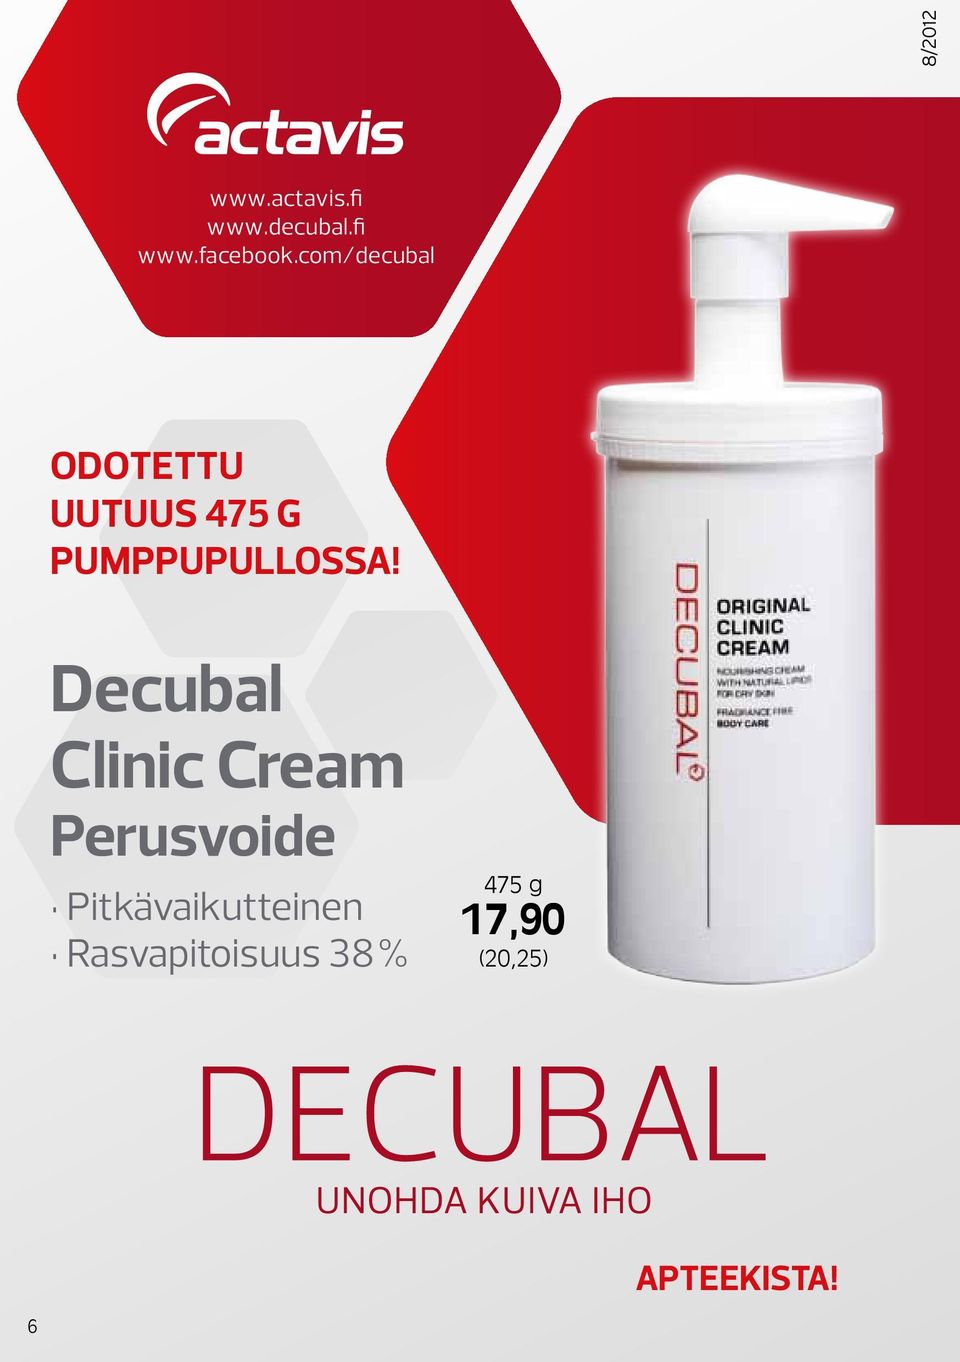 Decubal Clinic Cream Perusvoide Pitkävaikutteinen